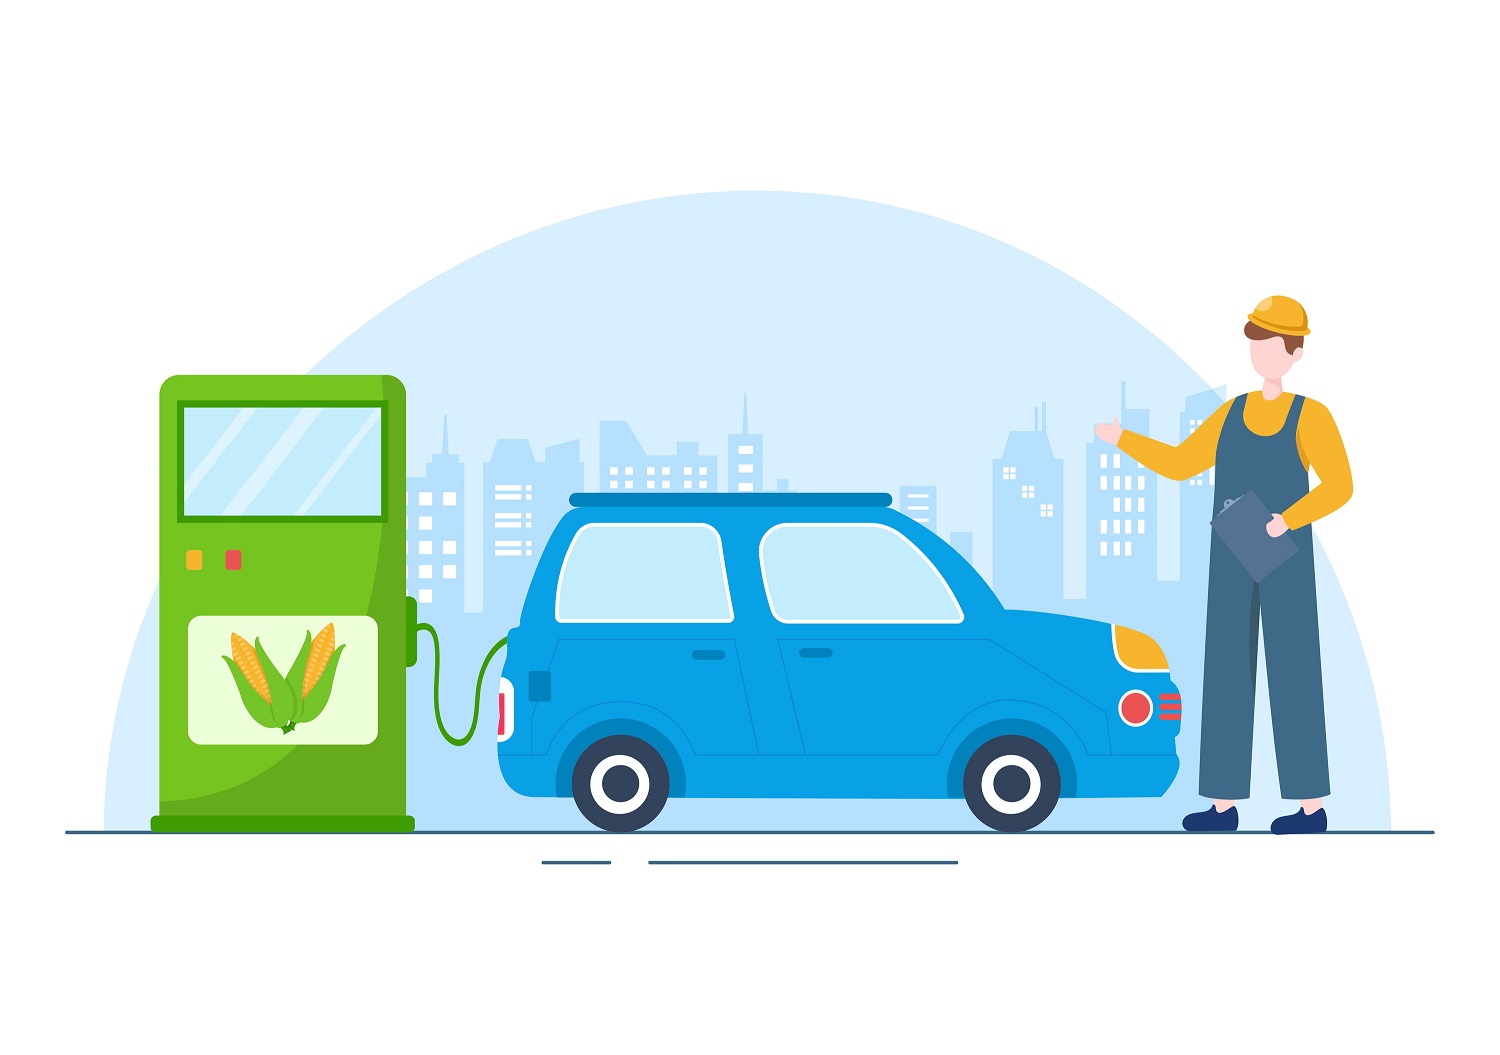 Grafika 2D - dystrybutor paliwa z ikoną kolb kukurydzy, samochód, pracownik stacji w czapce z daszkiem i spodniach na szelkach